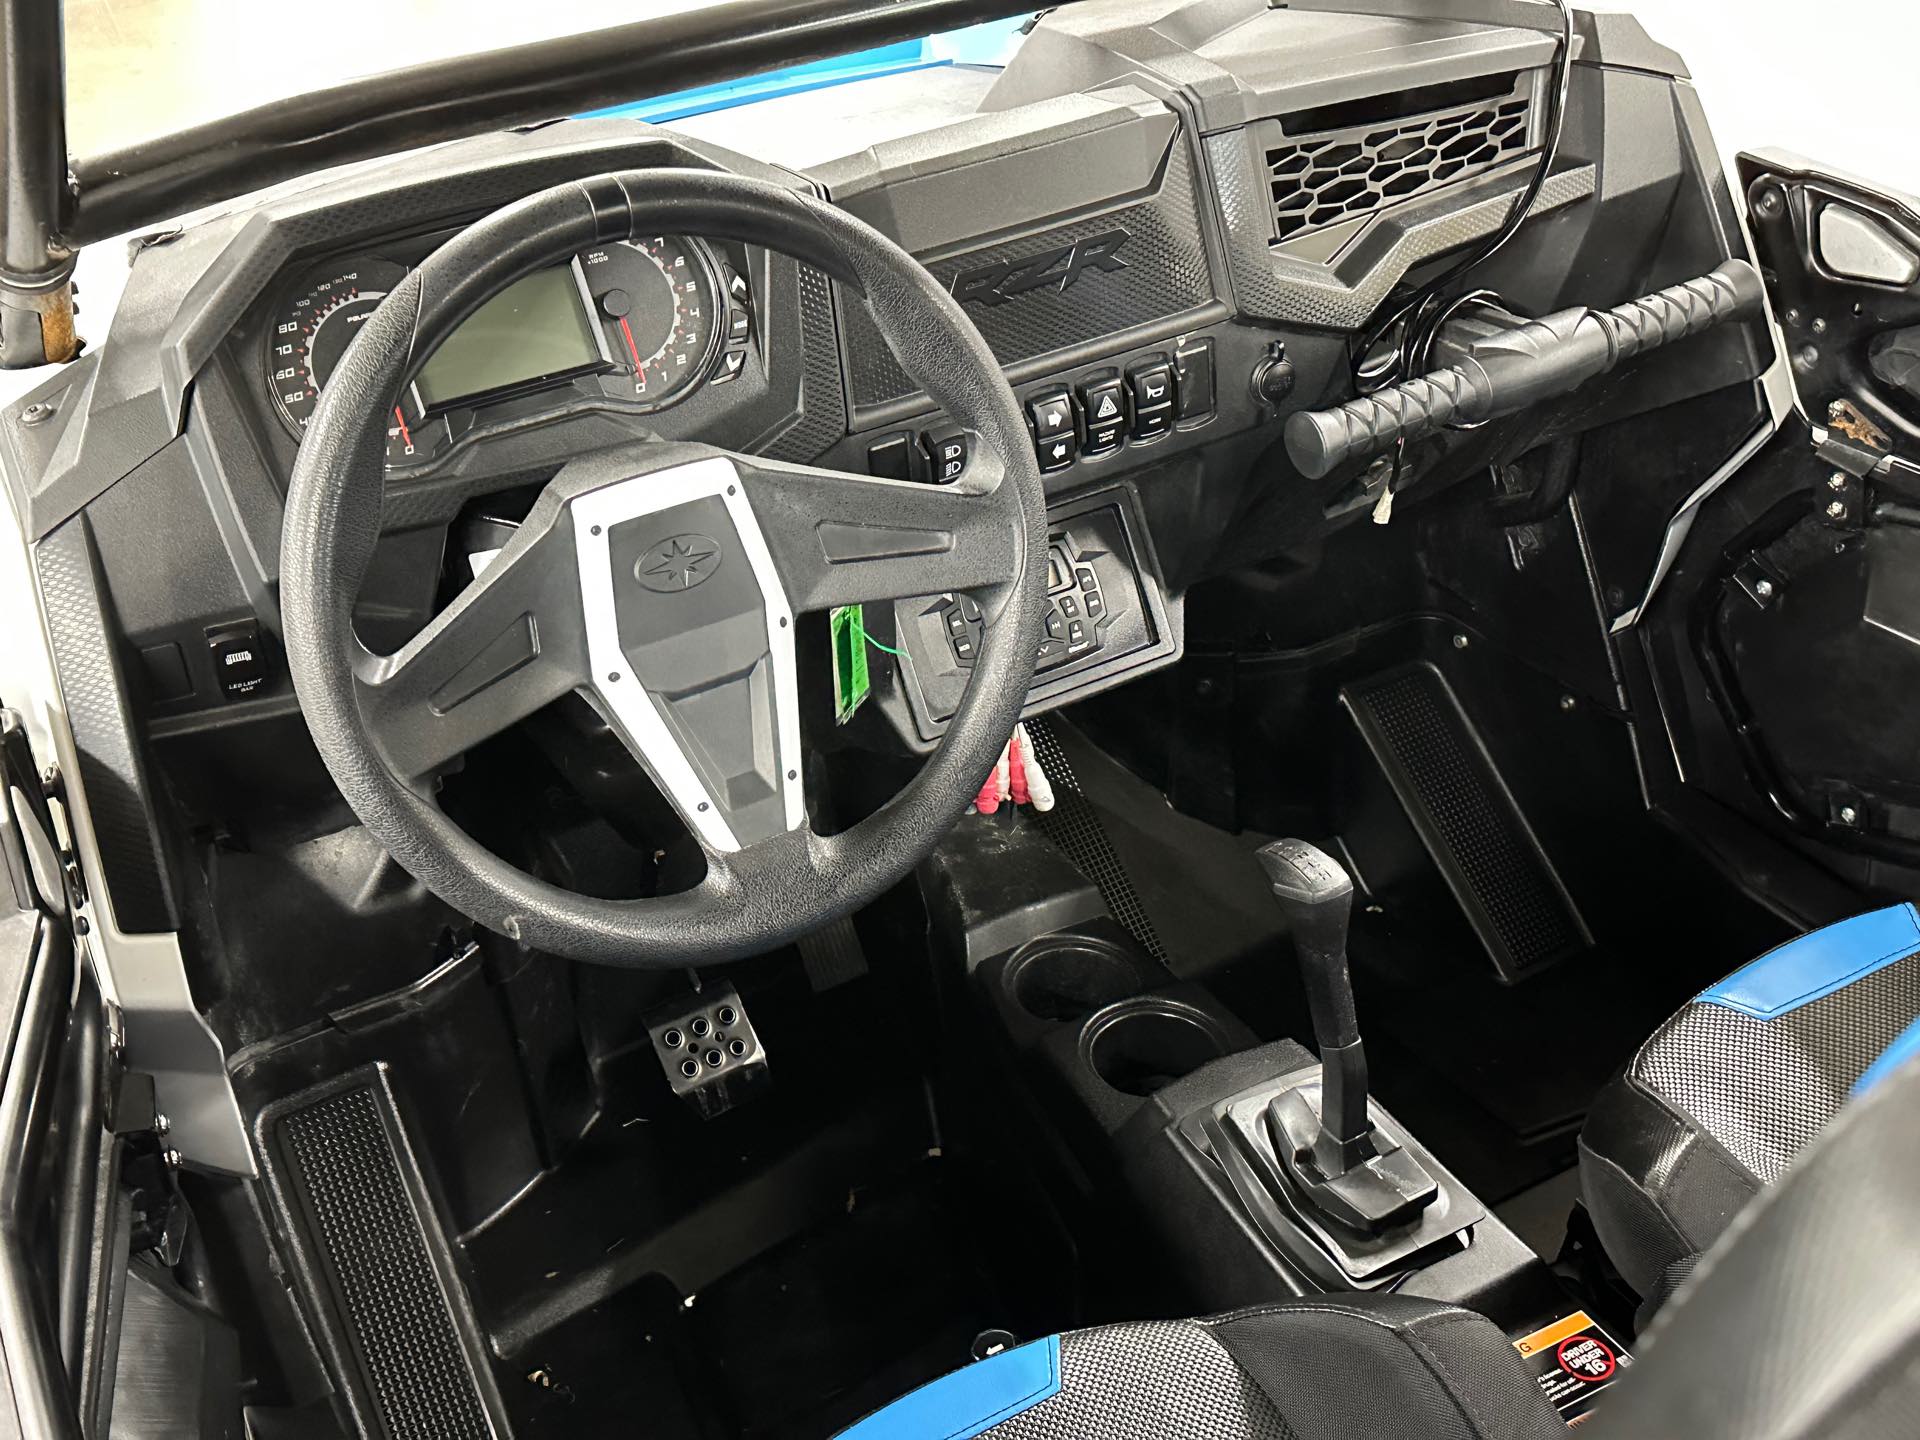 2020 Polaris RZR XP Turbo S Velocity at ATVs and More